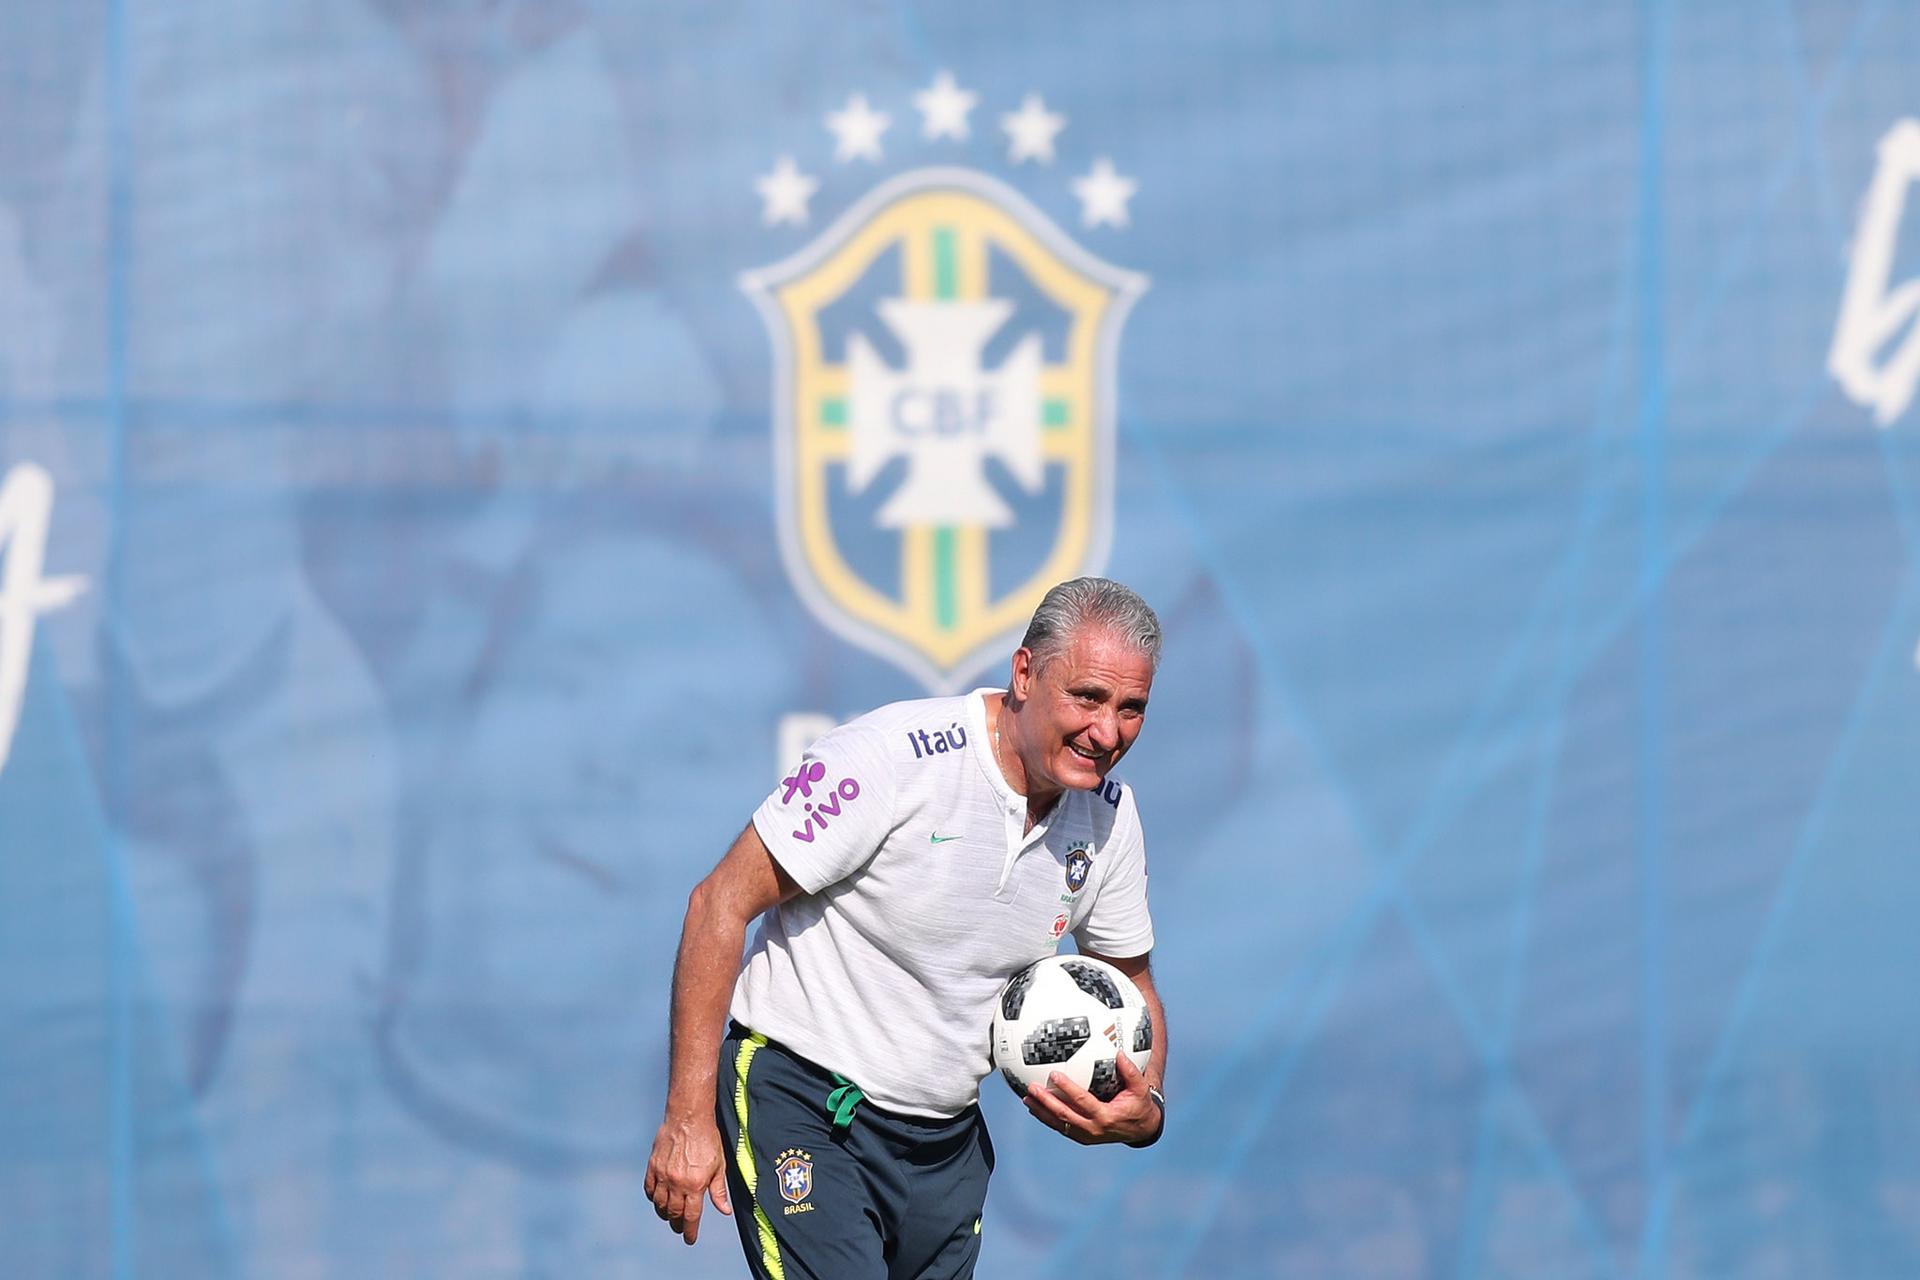 Sob o comando de Tite, Seleção Brasileira encerrou preparação antes de viagem a Rostov, palco da estreia